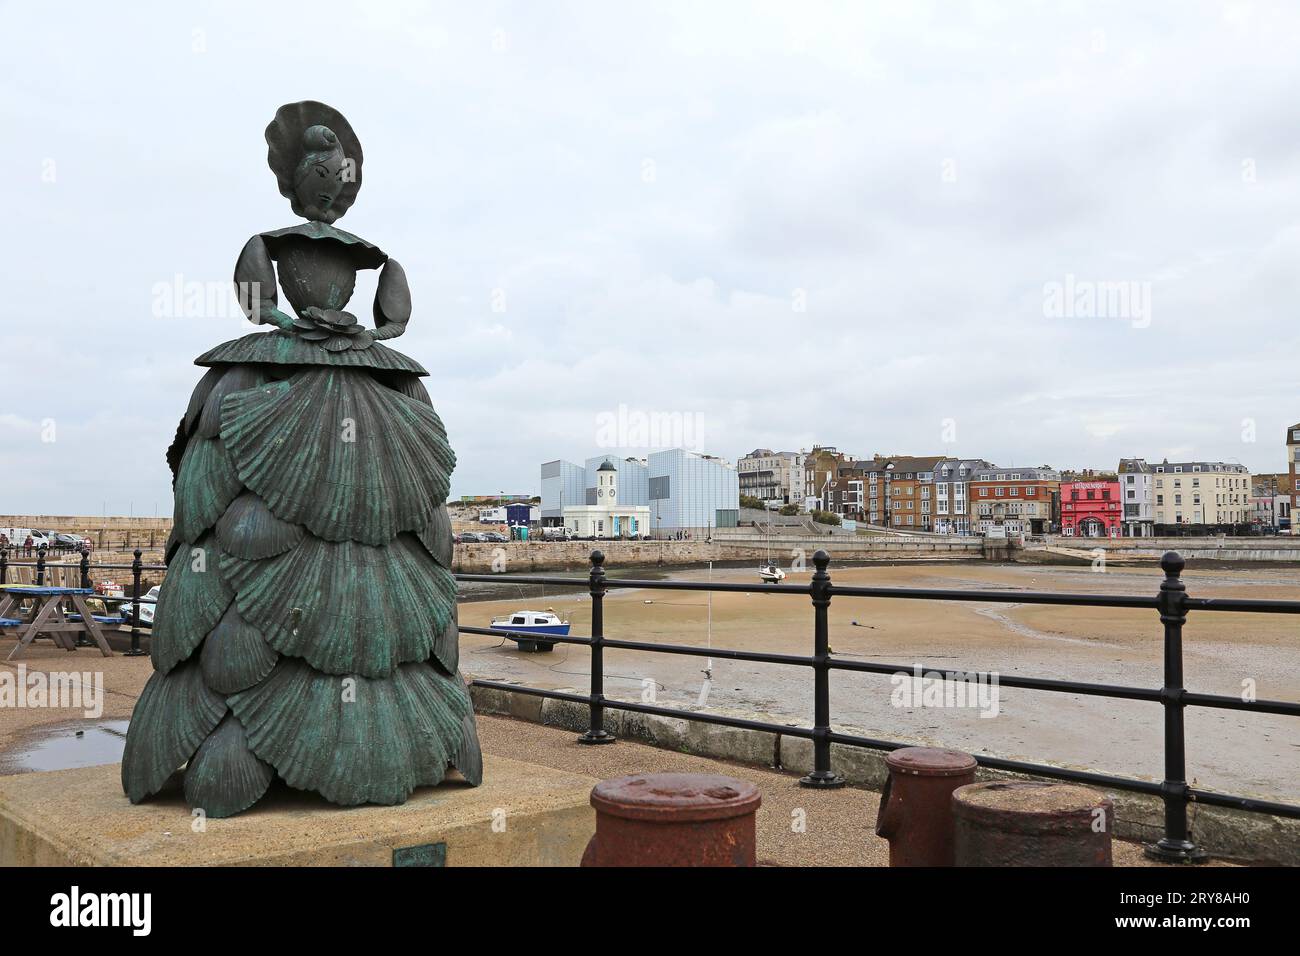 Sculpture Mrs Booth (Ann Carrington, 2003, bronze), Stone Pier, Margate, île de Thanet, Kent, Angleterre, Grande-Bretagne, Royaume-Uni, Royaume-Uni, Europe Banque D'Images